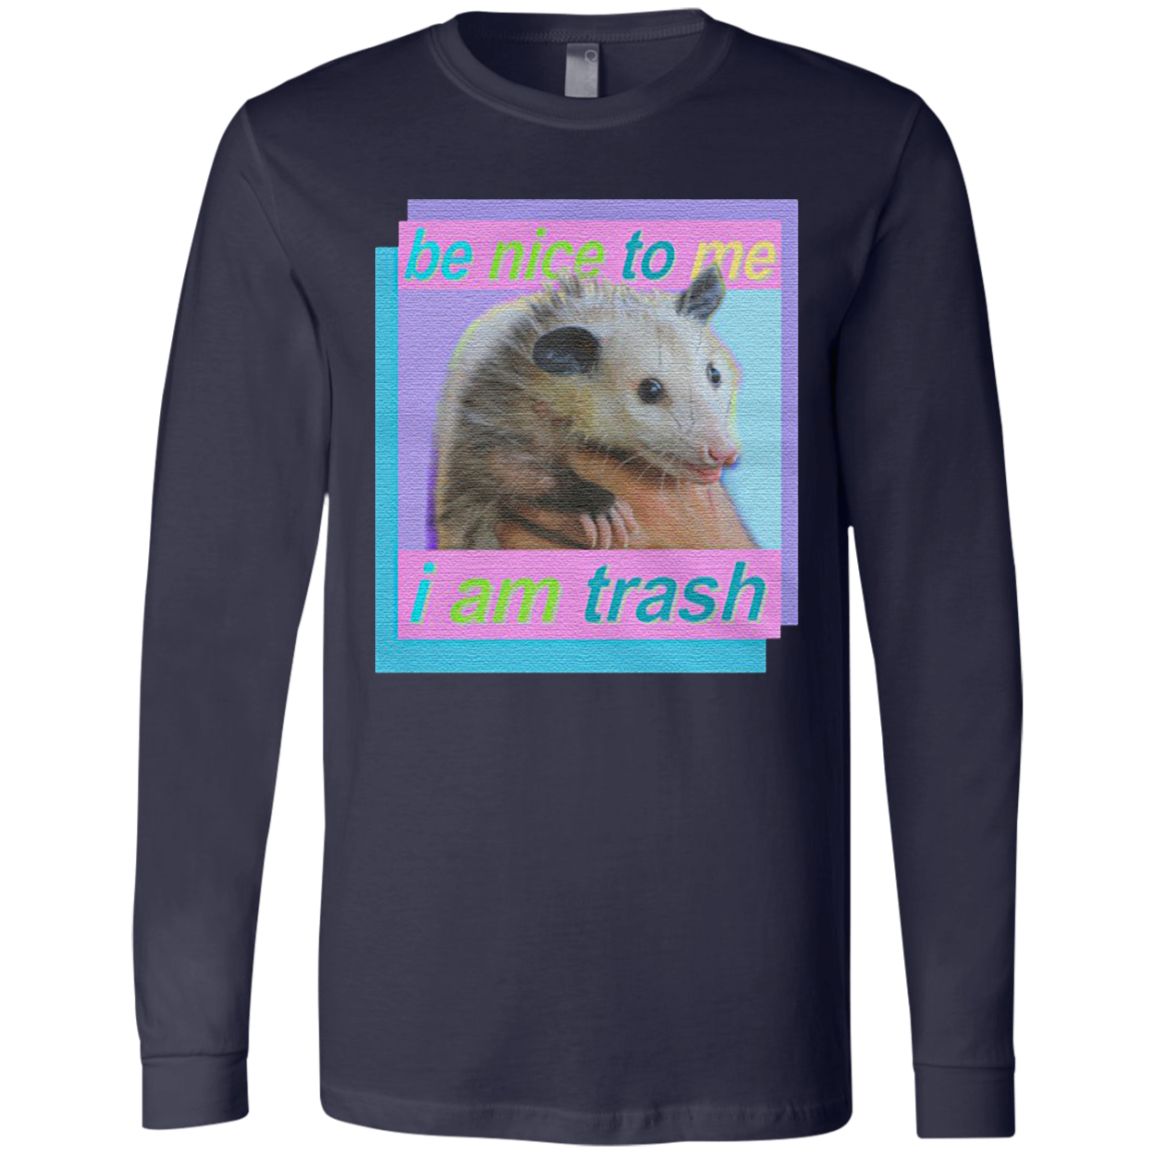 Be nice to me i am trash t shirt